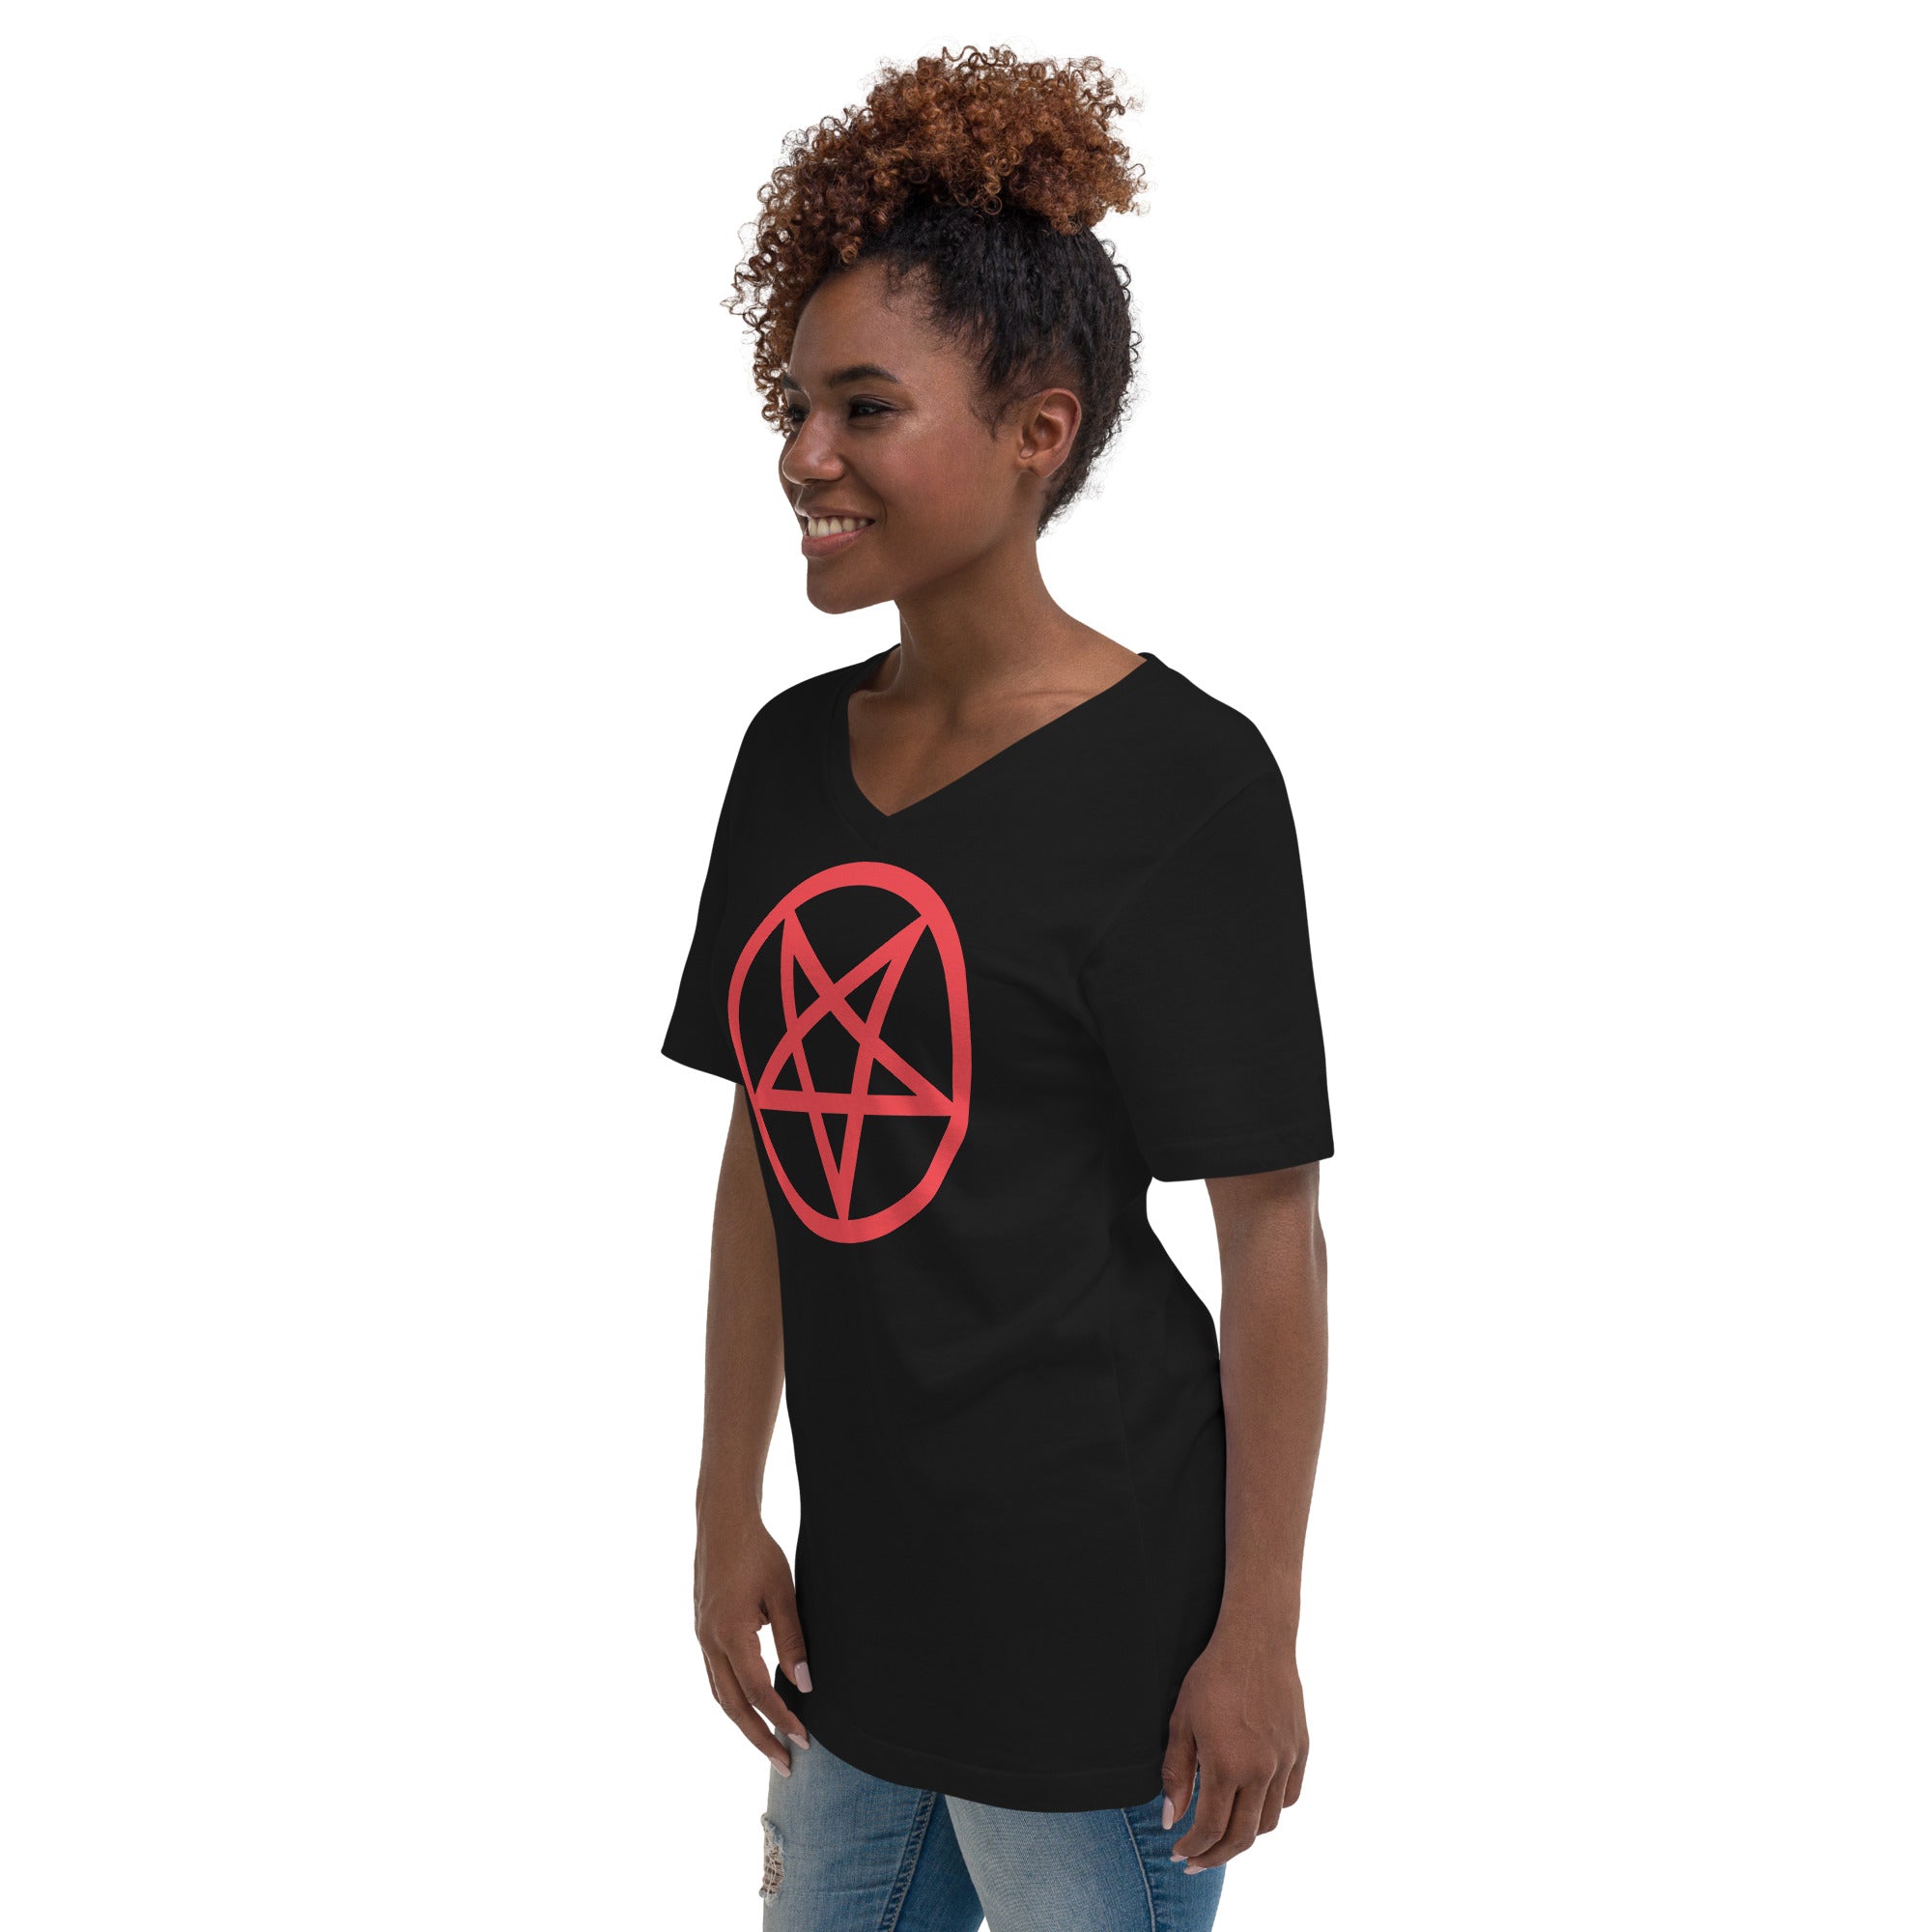 Red Classic Inverted Pentagram Occult Symbol Women’s Short Sleeve V-Neck T-Shirt